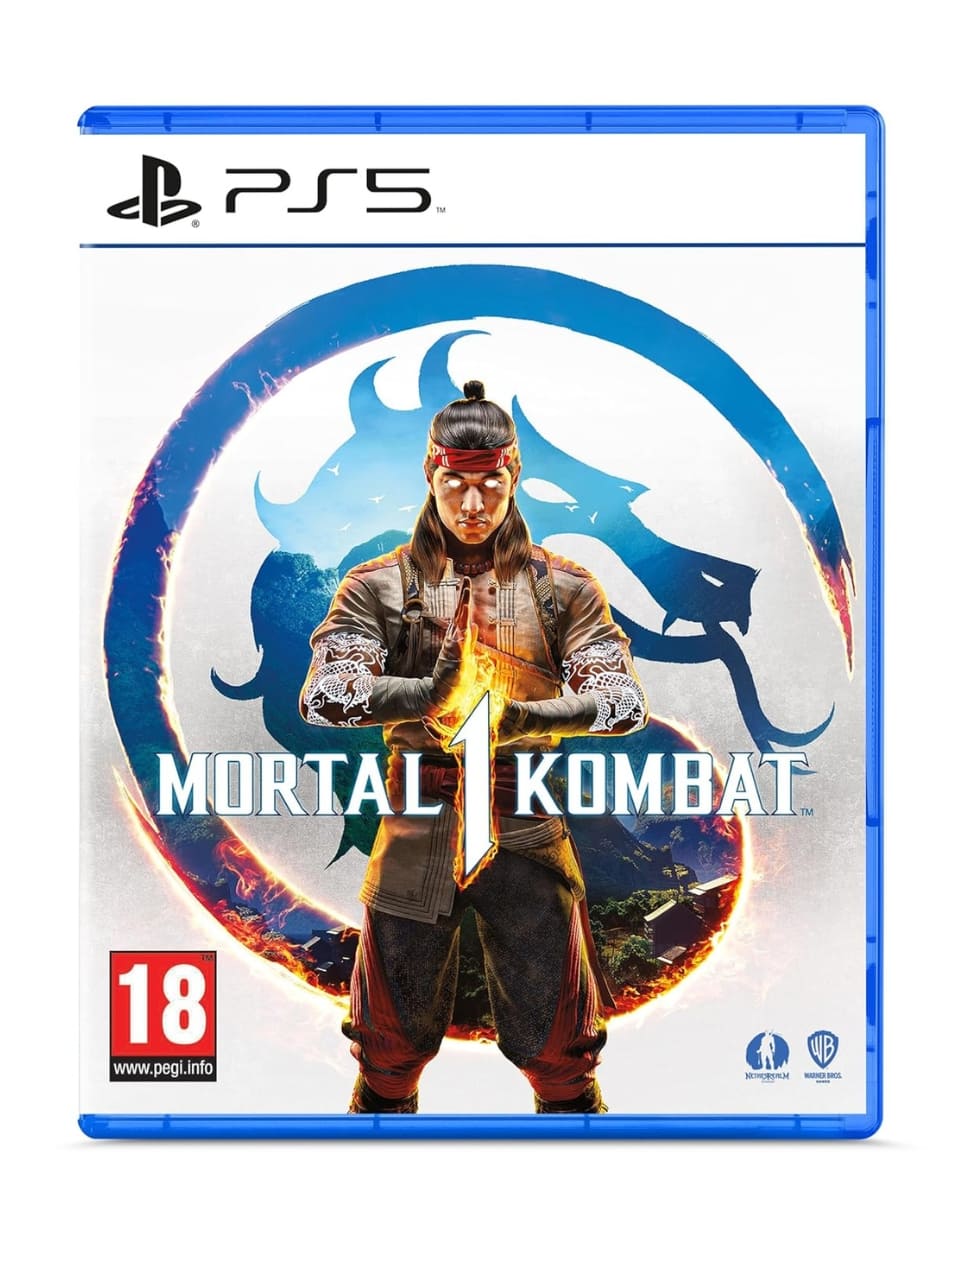 Mortal Kombat 1 - PlayStation 5/PS5